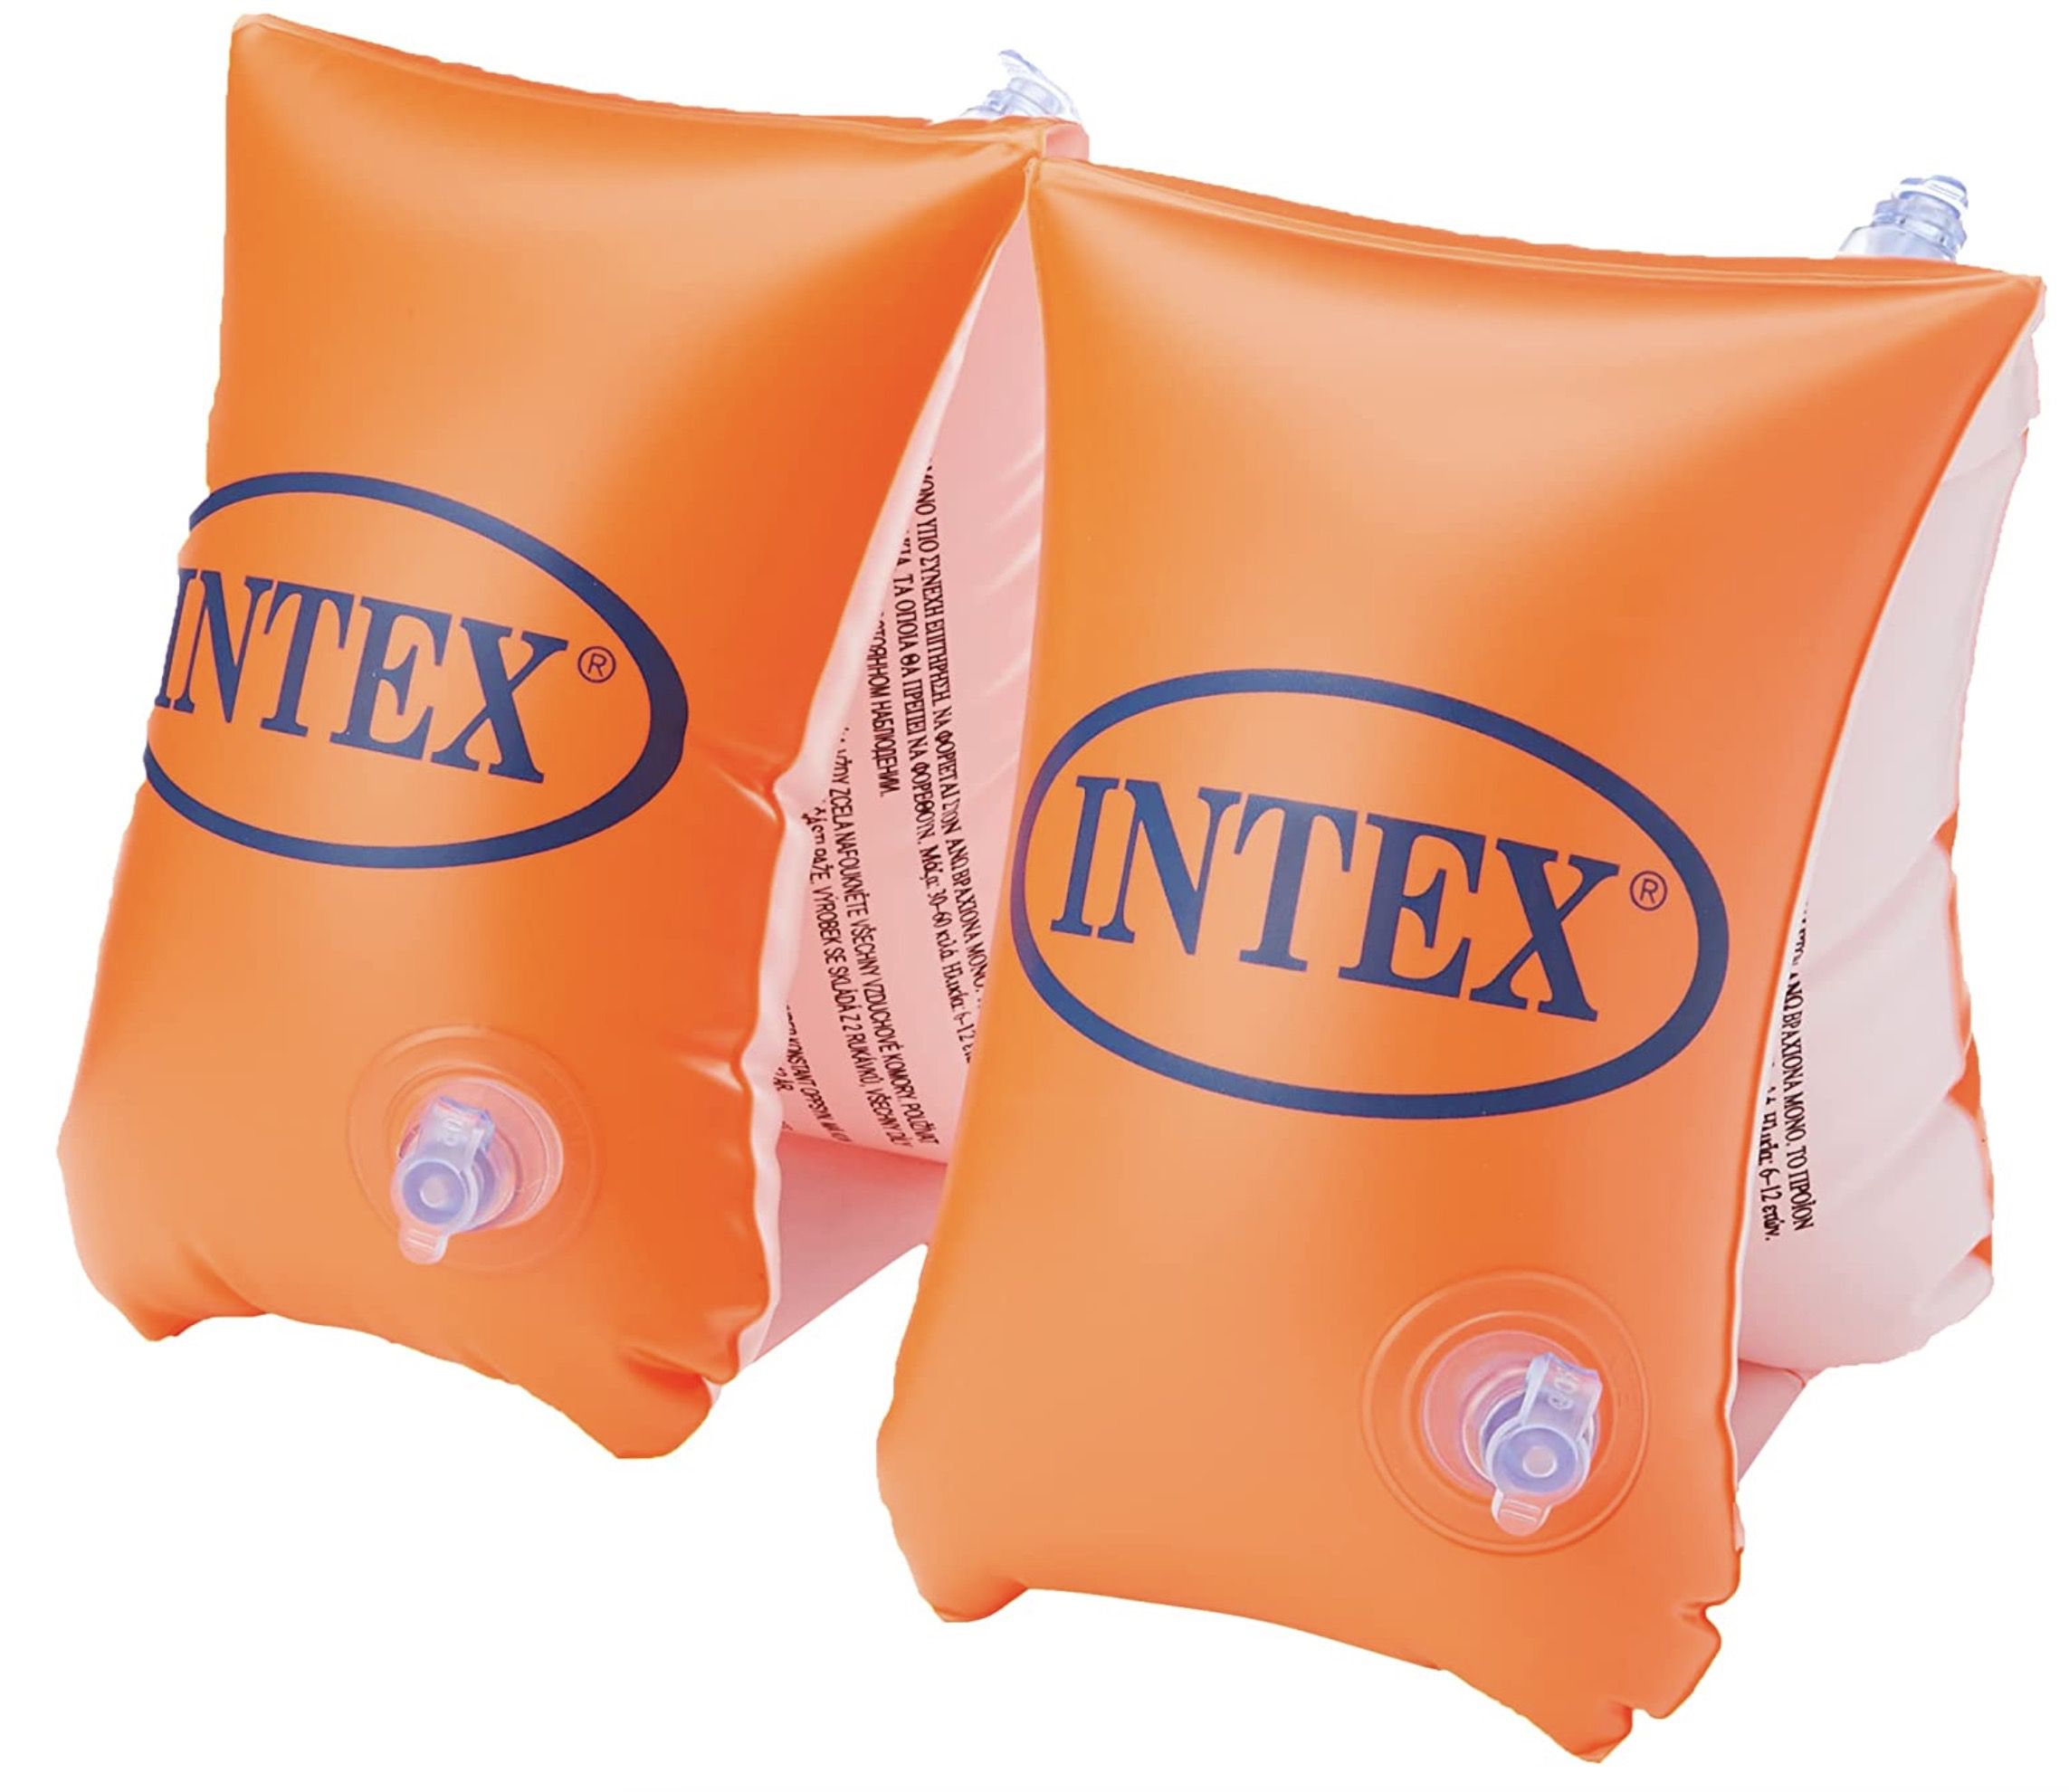 Intex Schwimmflügel Deluxe groß in Orange für 1,42€ (statt 7€)   Prime